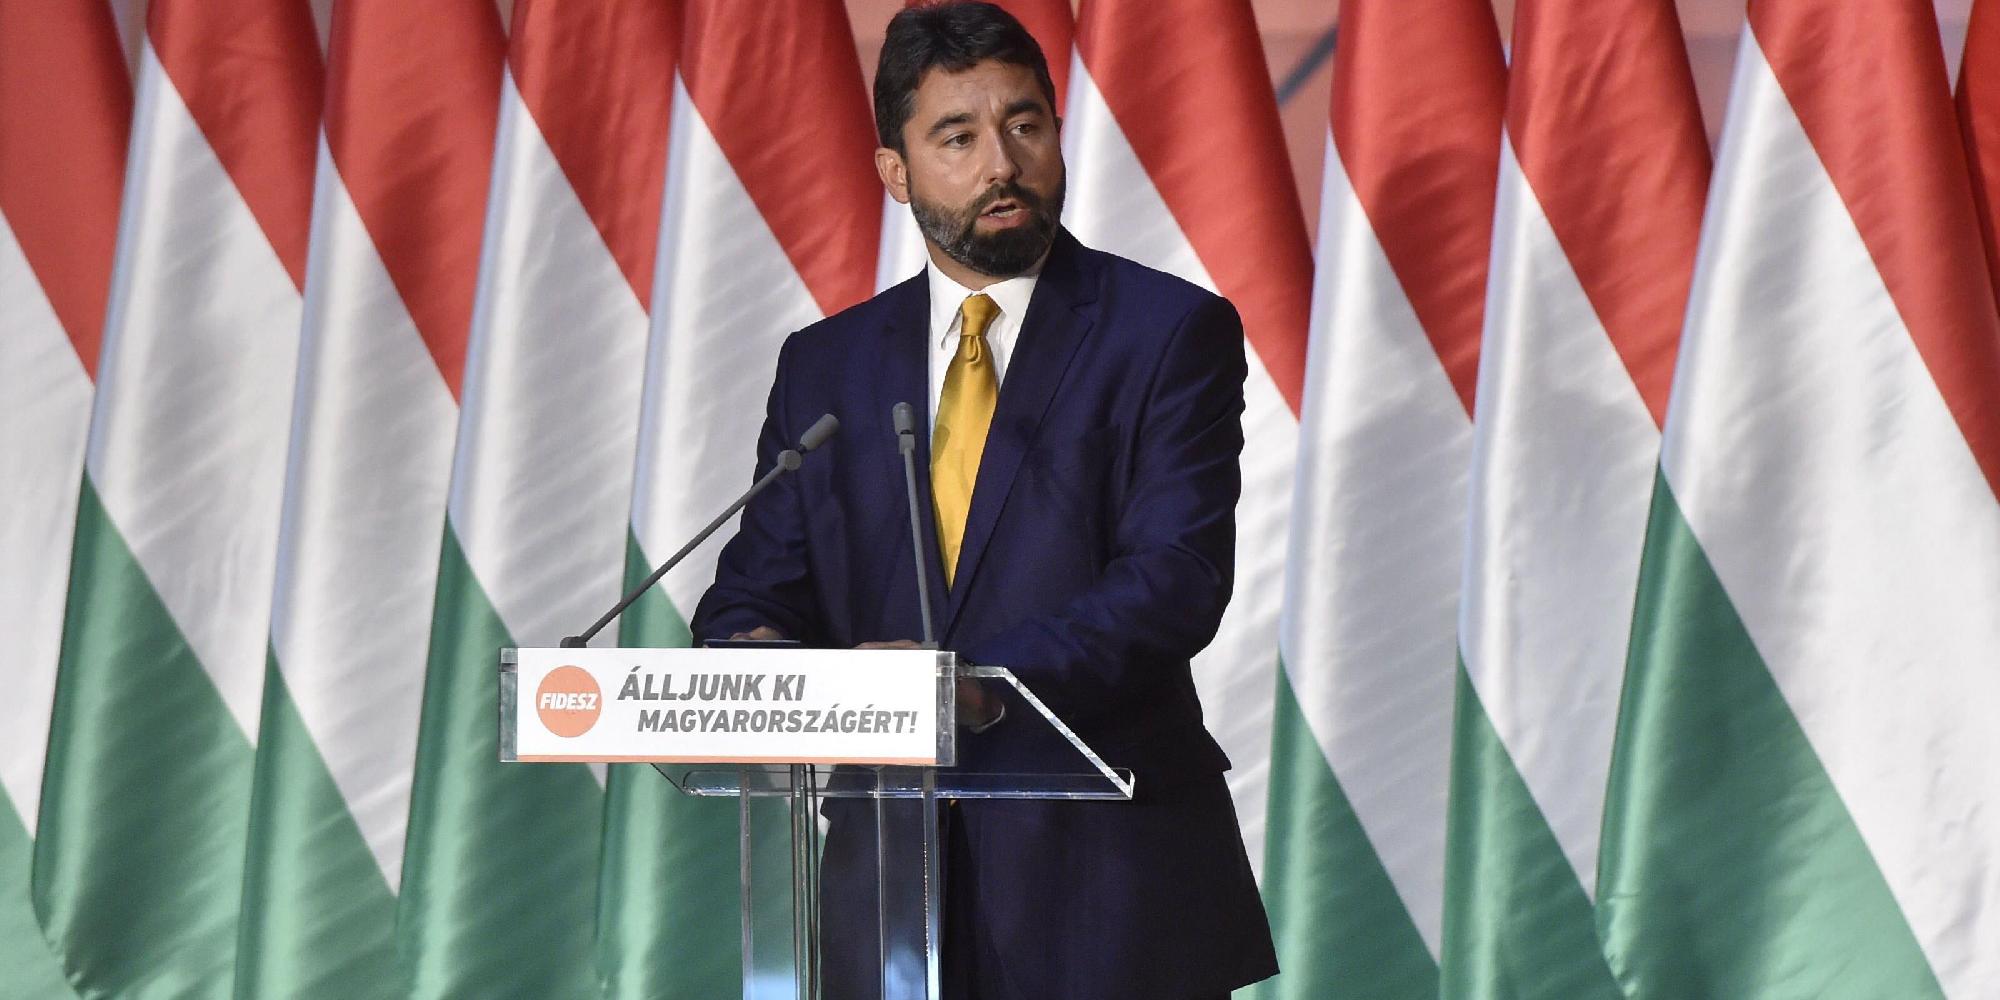  Hidvéghi Balázs: A Fidesz országjárásba kezd és választási fórumokat tart 